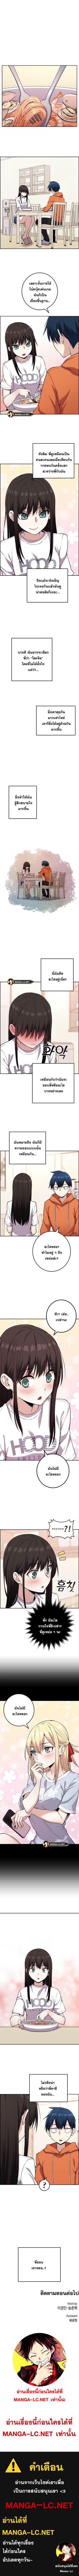 Webtoon Character Na Kang Lim ตอนที่ 56 (7)